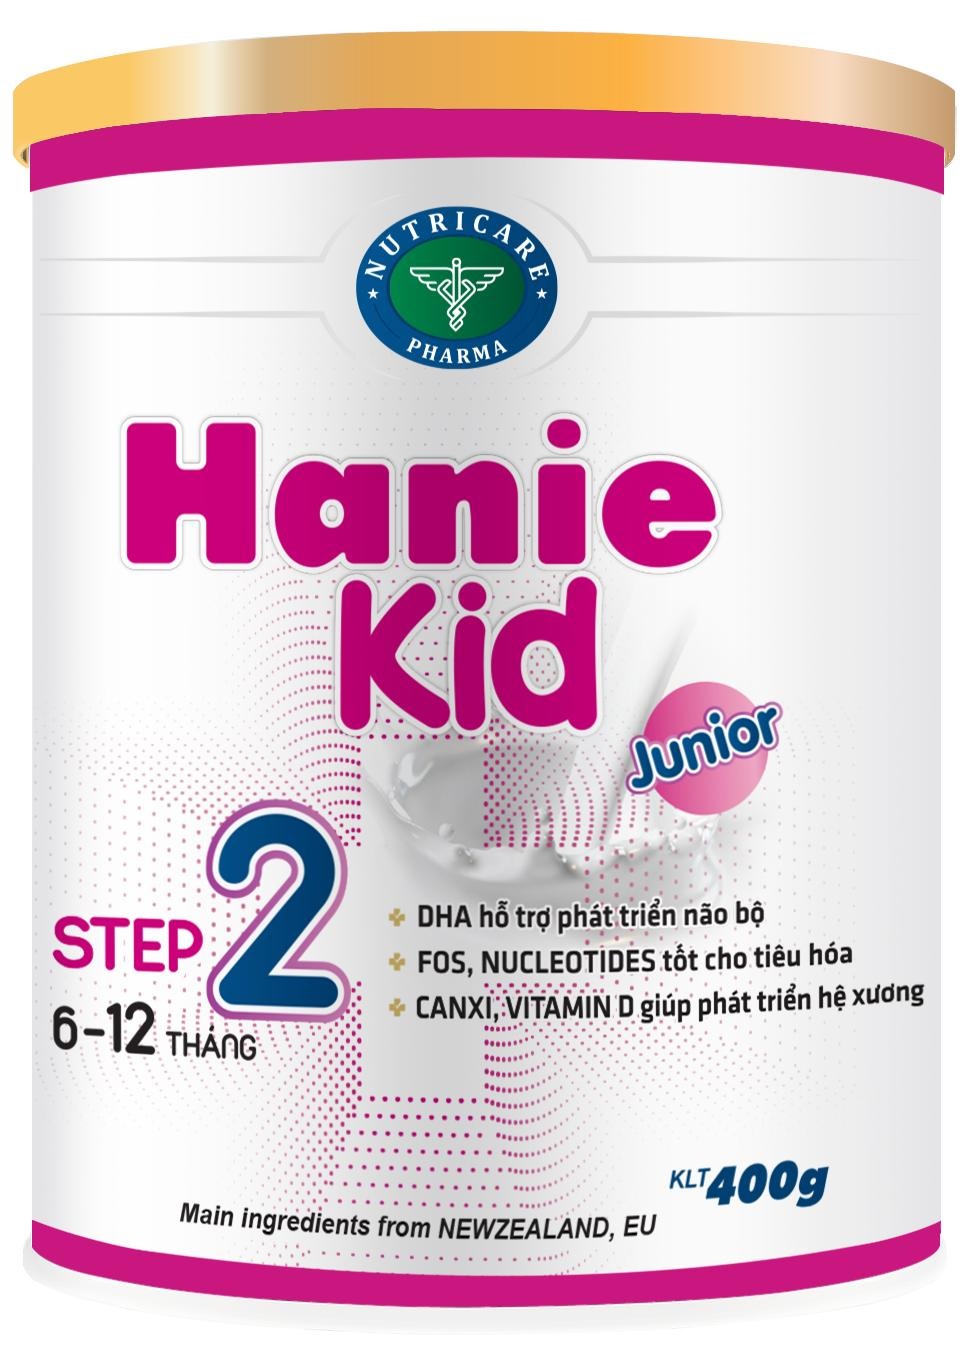 Sữa Hanie Kid 2 (Sữa đặc hiệu dành cho trẻ phát triển não bộ; hỗ trợ tiêu hóa; giúp phát triển hệ xương dùng cho trẻ từ 6 -> 12 tháng tuổi;  ….)